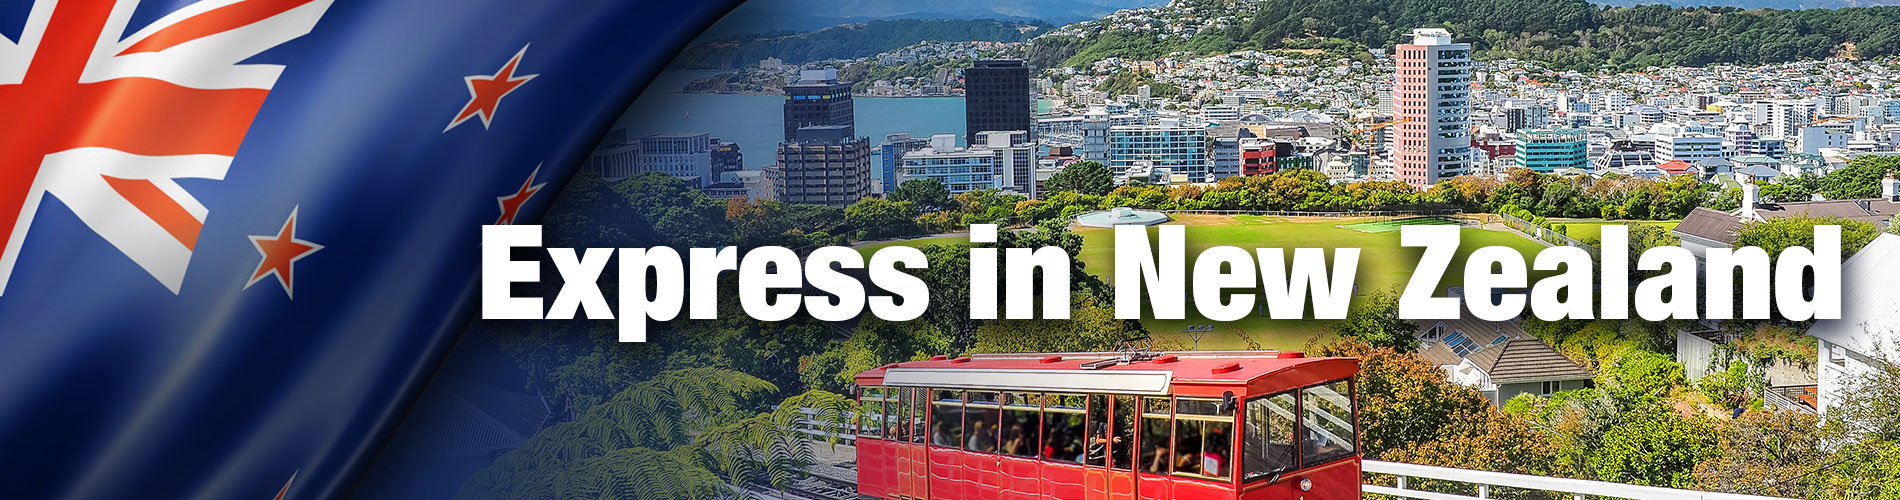 NZ_Express-in-New-Zealand_Web-Banner